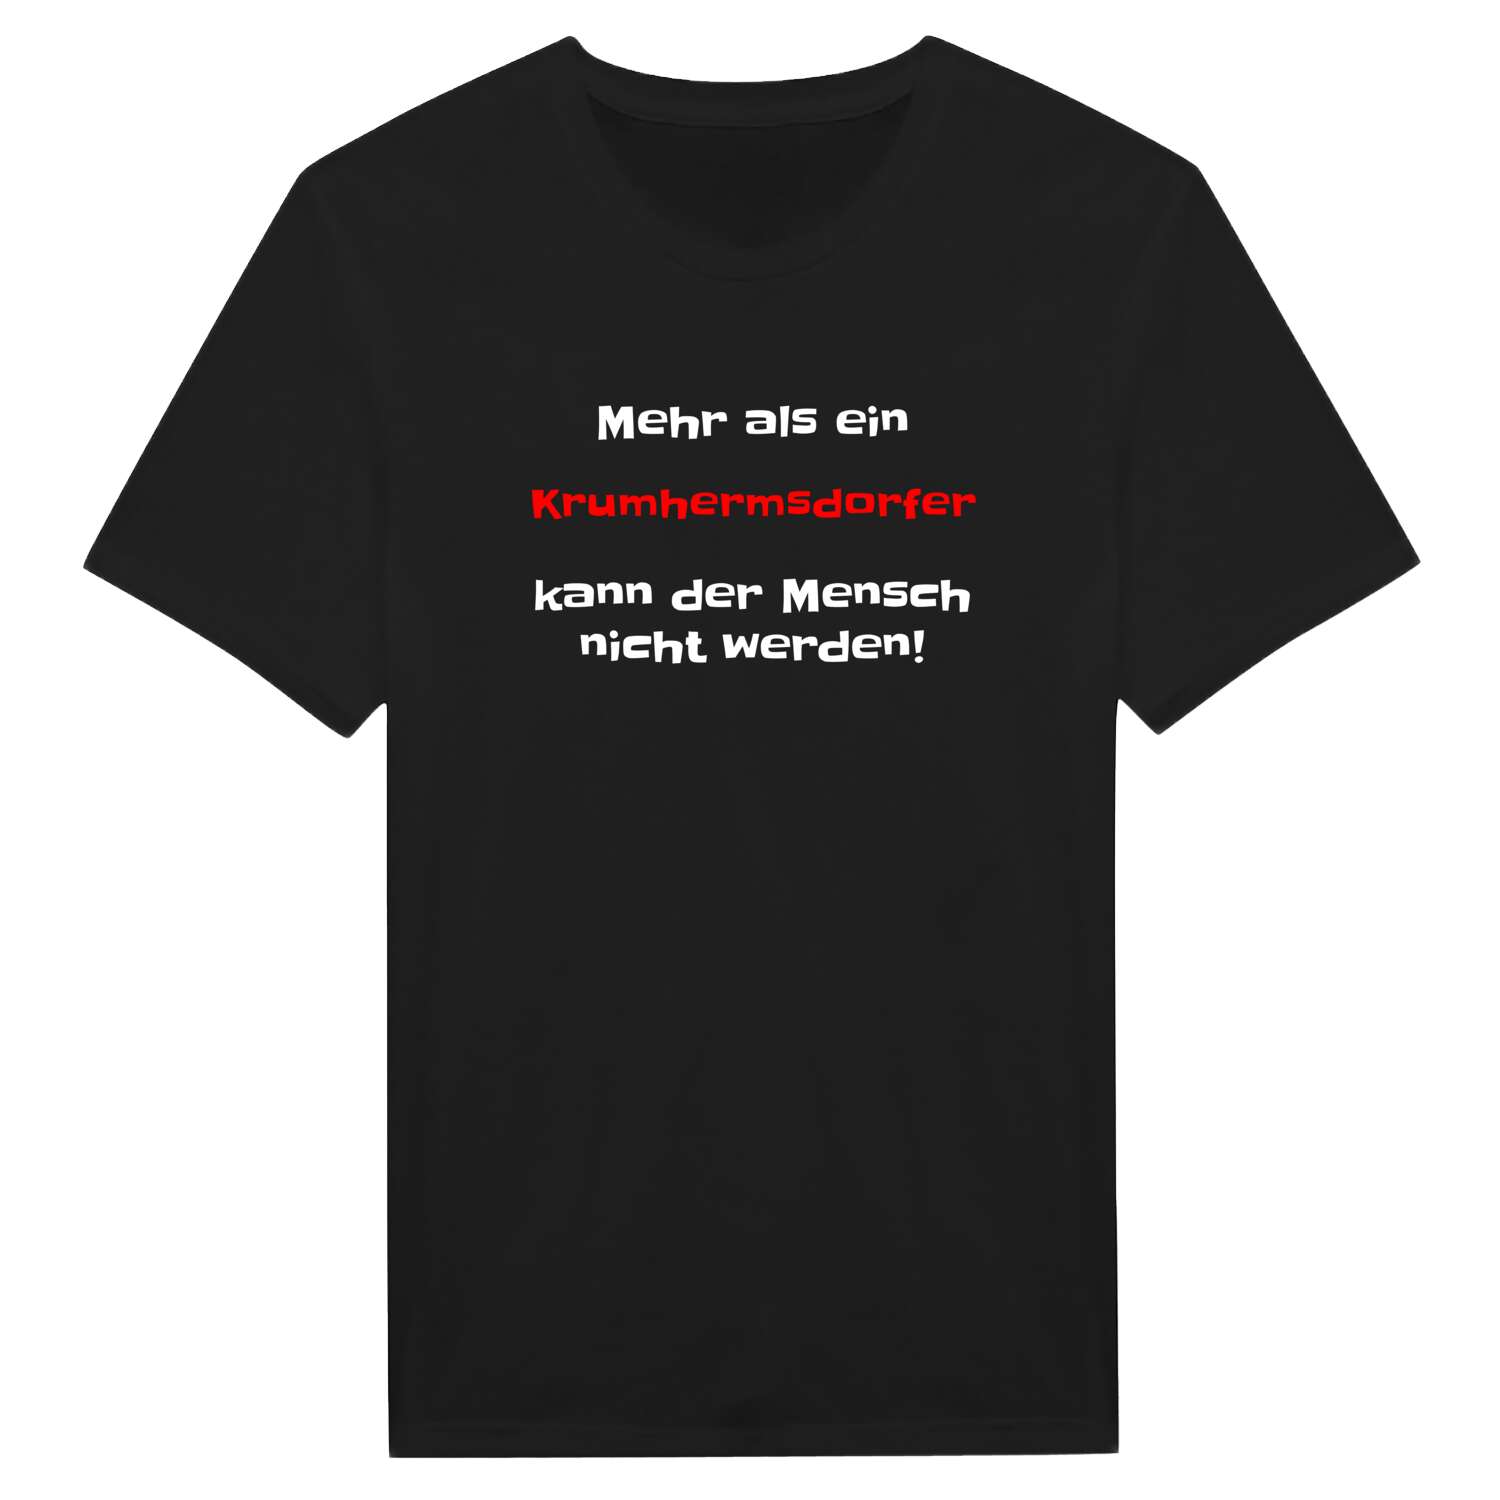 Krumhermsdorf T-Shirt »Mehr als ein«